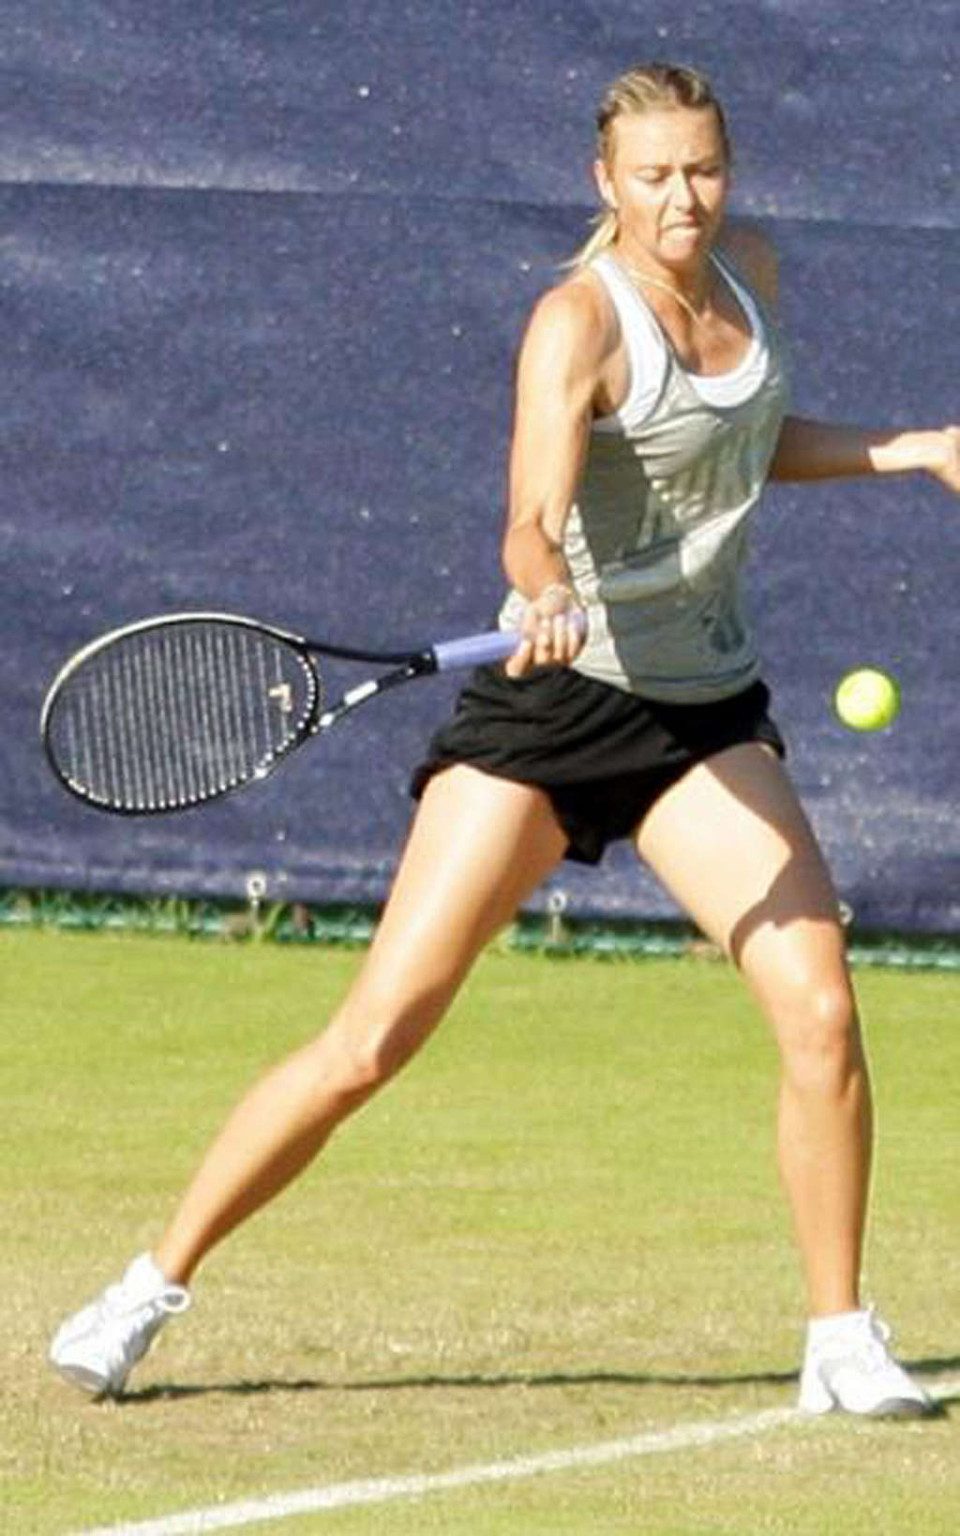 Maria sharapova nipple slip während spielen tennis paparazzi schießt
 #75346420